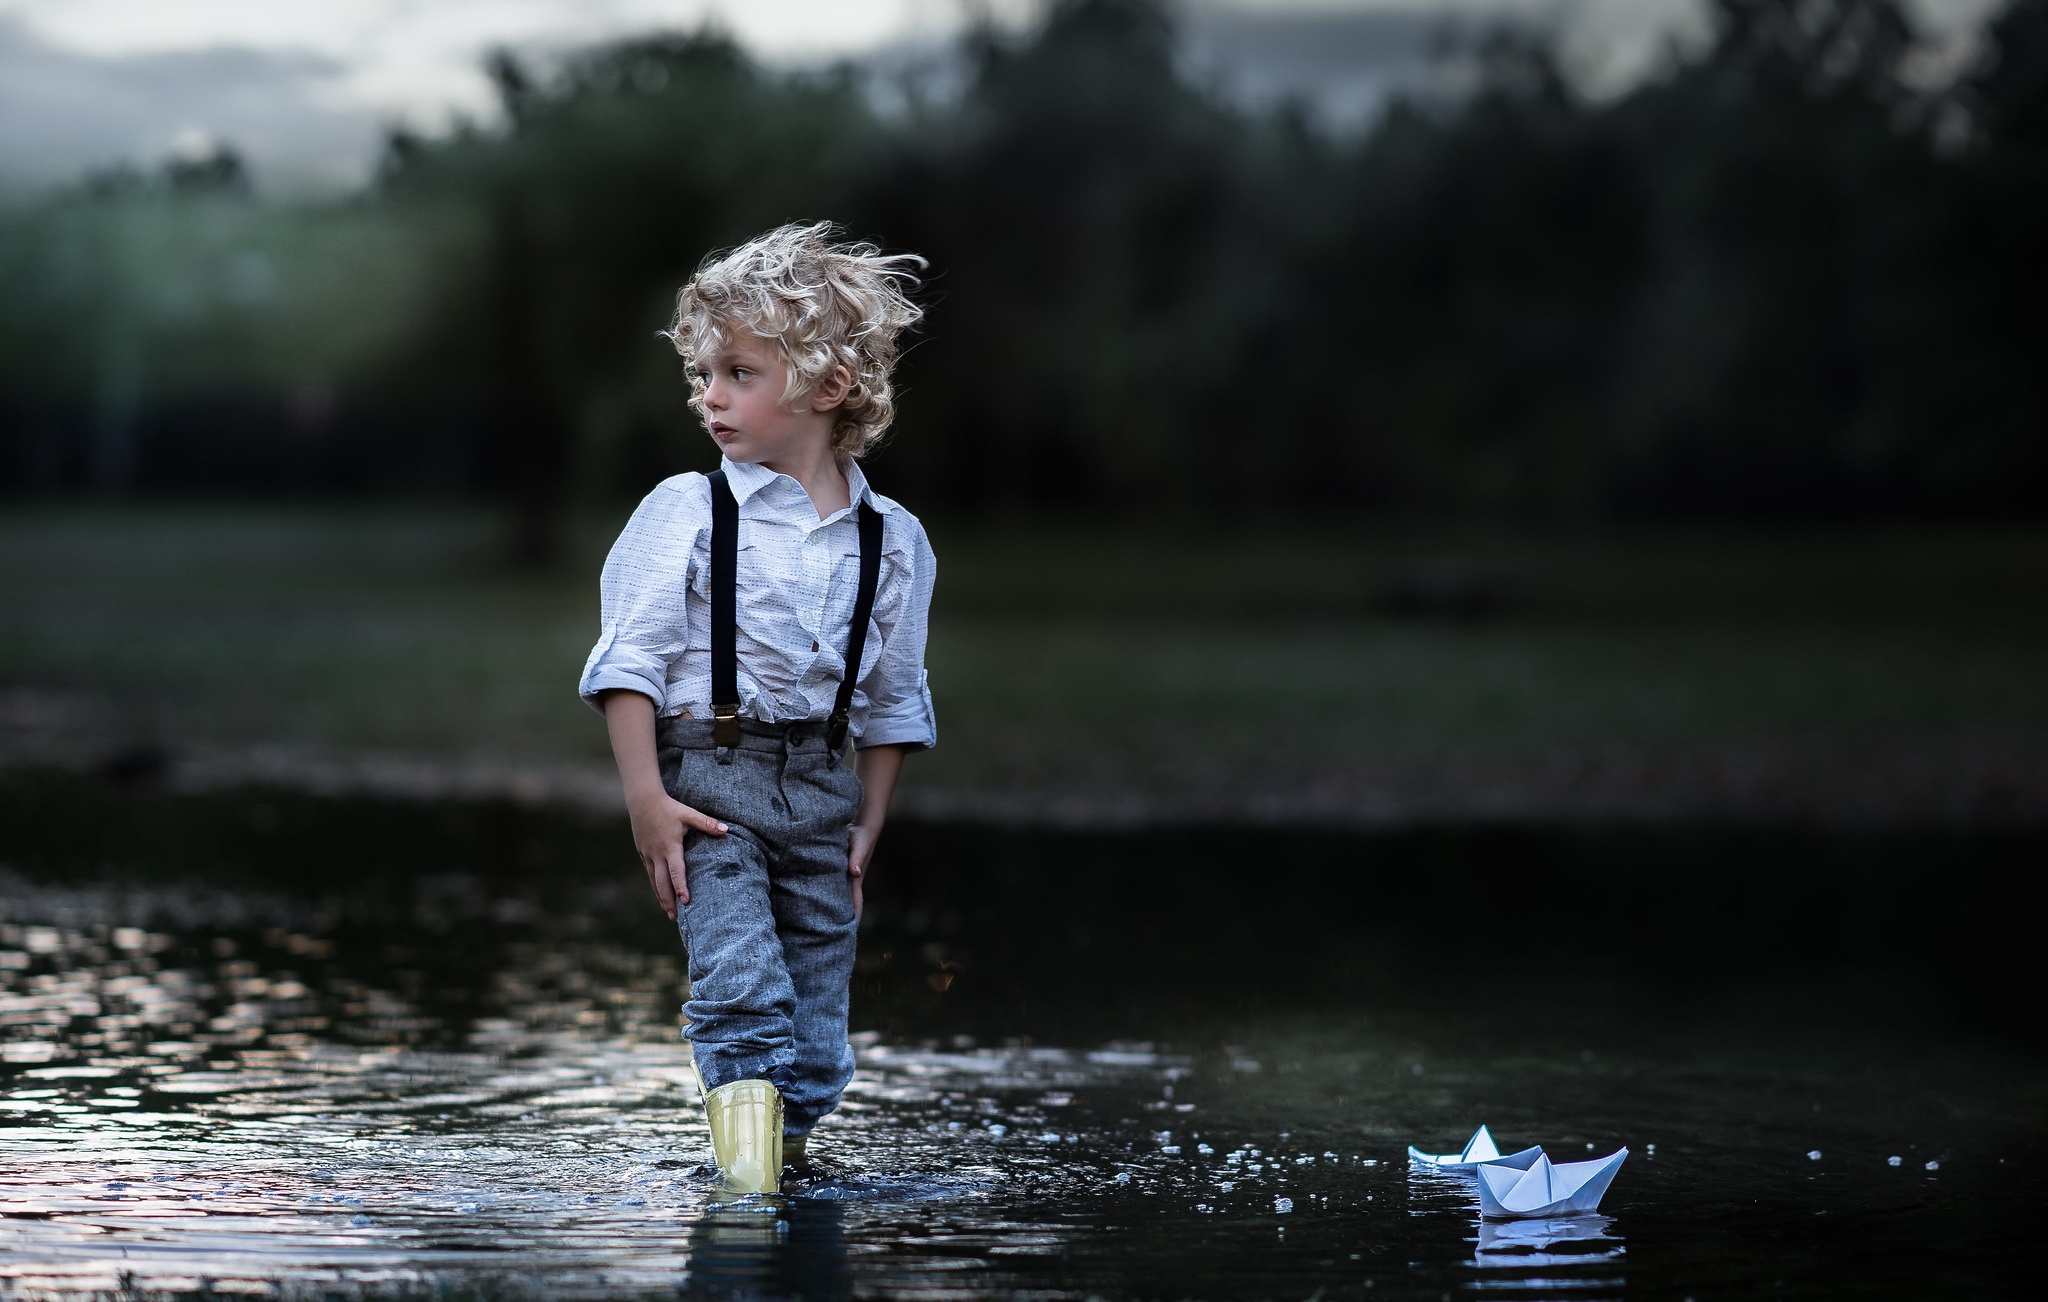 И сам не меньше мальчика. Мальчик с корабликом. Мальчики на речке. Мальчик на реке. Деревенский мальчик.